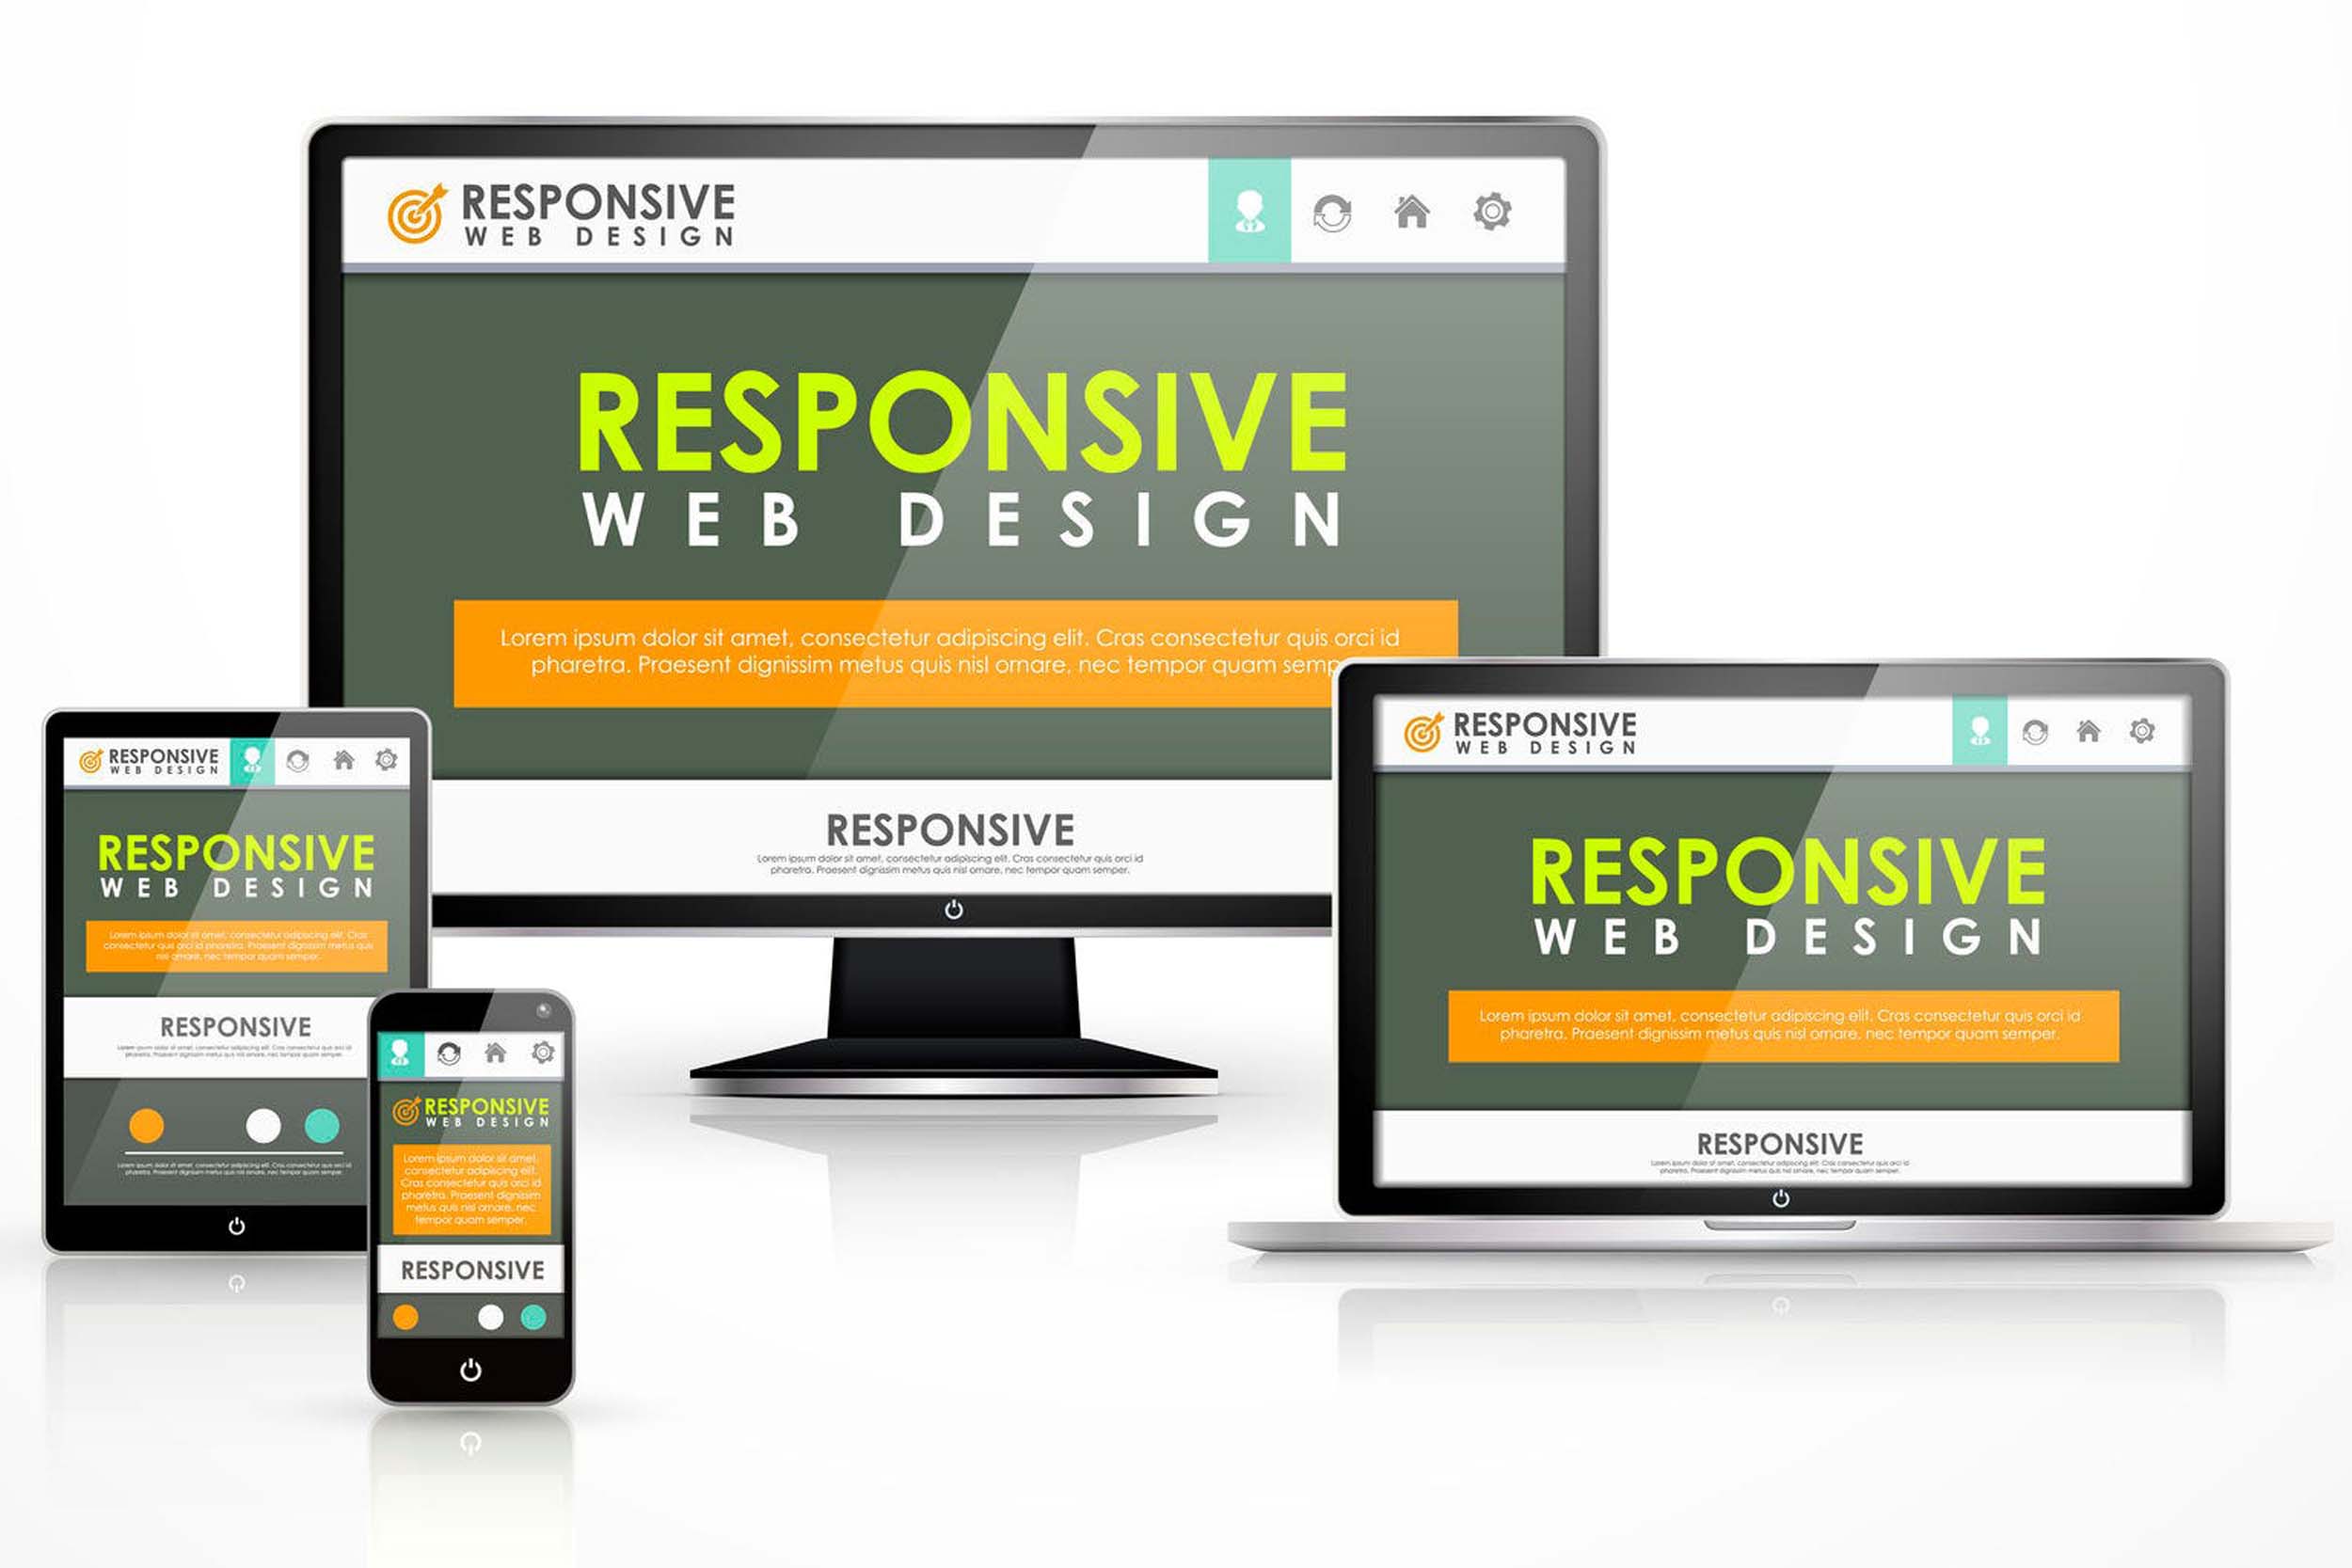 respobsive website design by jts